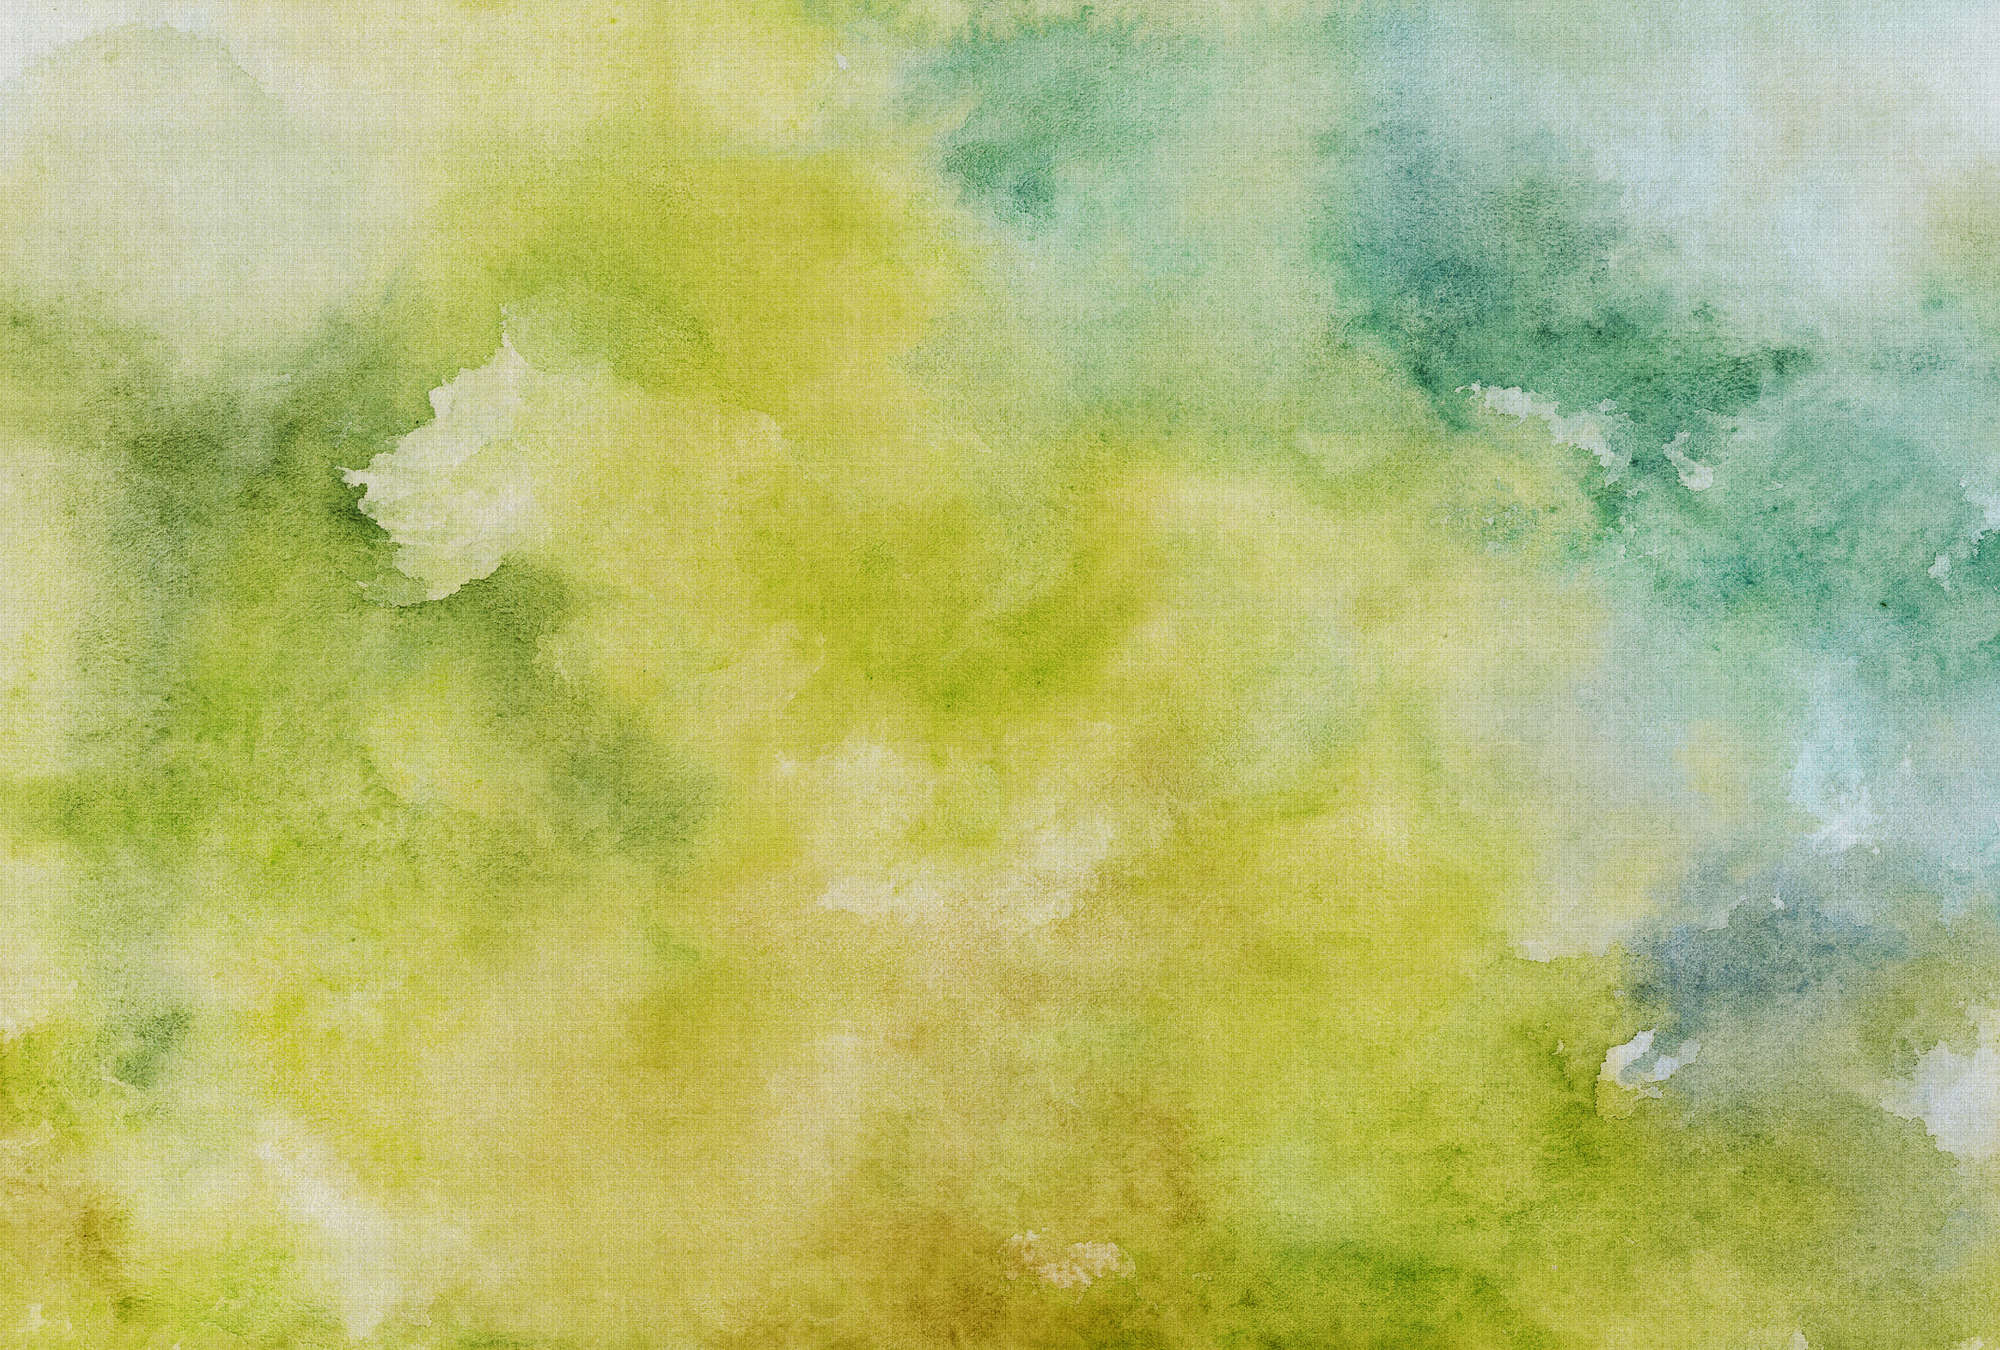             Watercolours 3 - Groen aquarelmotief als fotobehang in natuurlijke linnenstructuur - Geel, Groen | Pearl glad vlies
        